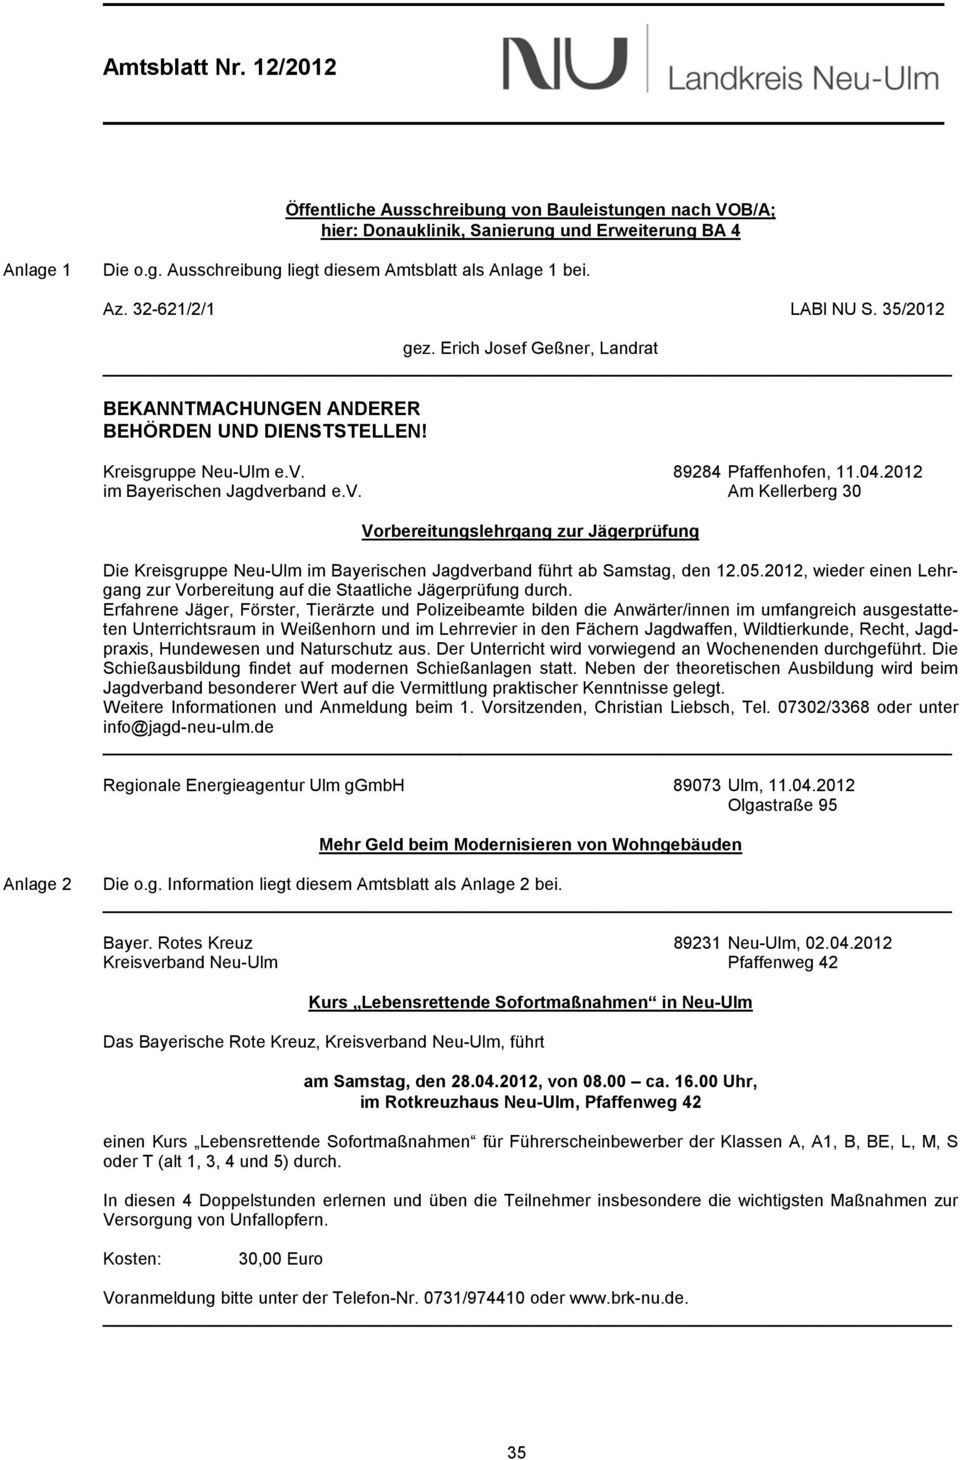 2012 im Bayerischen Jagdverband e.v. Am Kellerberg 30 Vorbereitungslehrgang zur Jägerprüfung Die Kreisgruppe Neu-Ulm im Bayerischen Jagdverband führt ab Samstag, den 12.05.